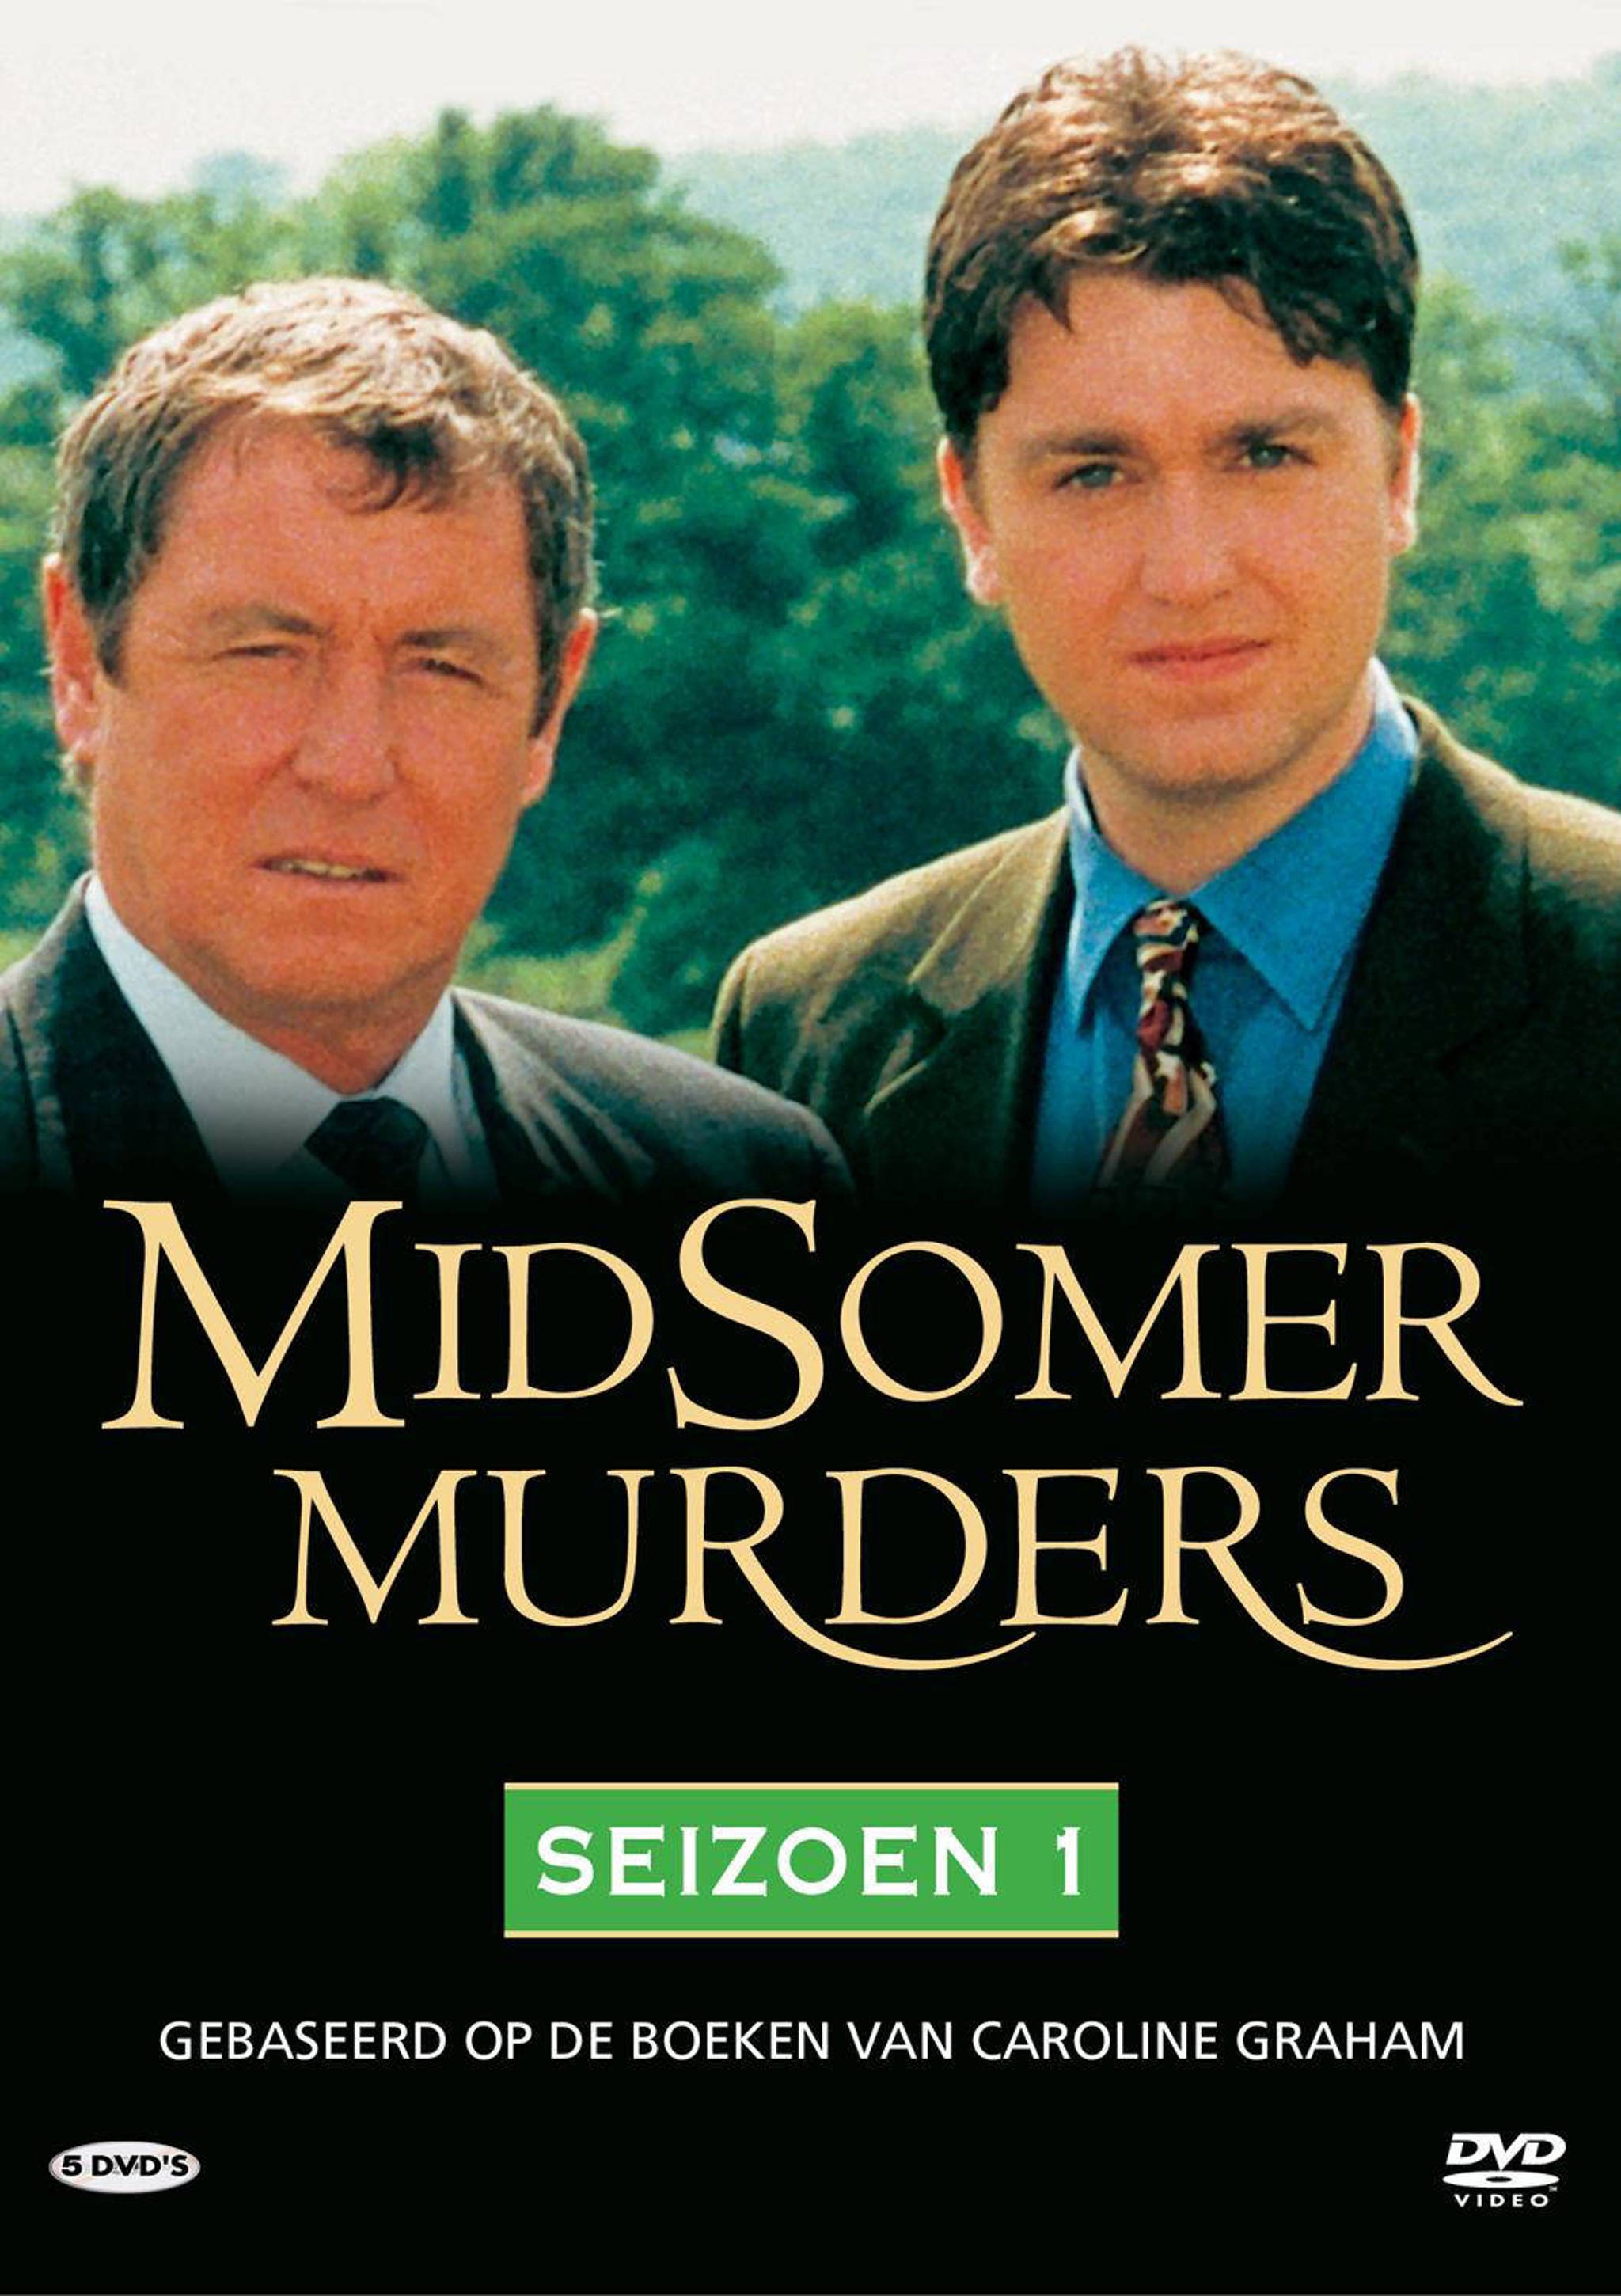 Midsomer Murders ( Seizoen ( 1 DvD 3 )